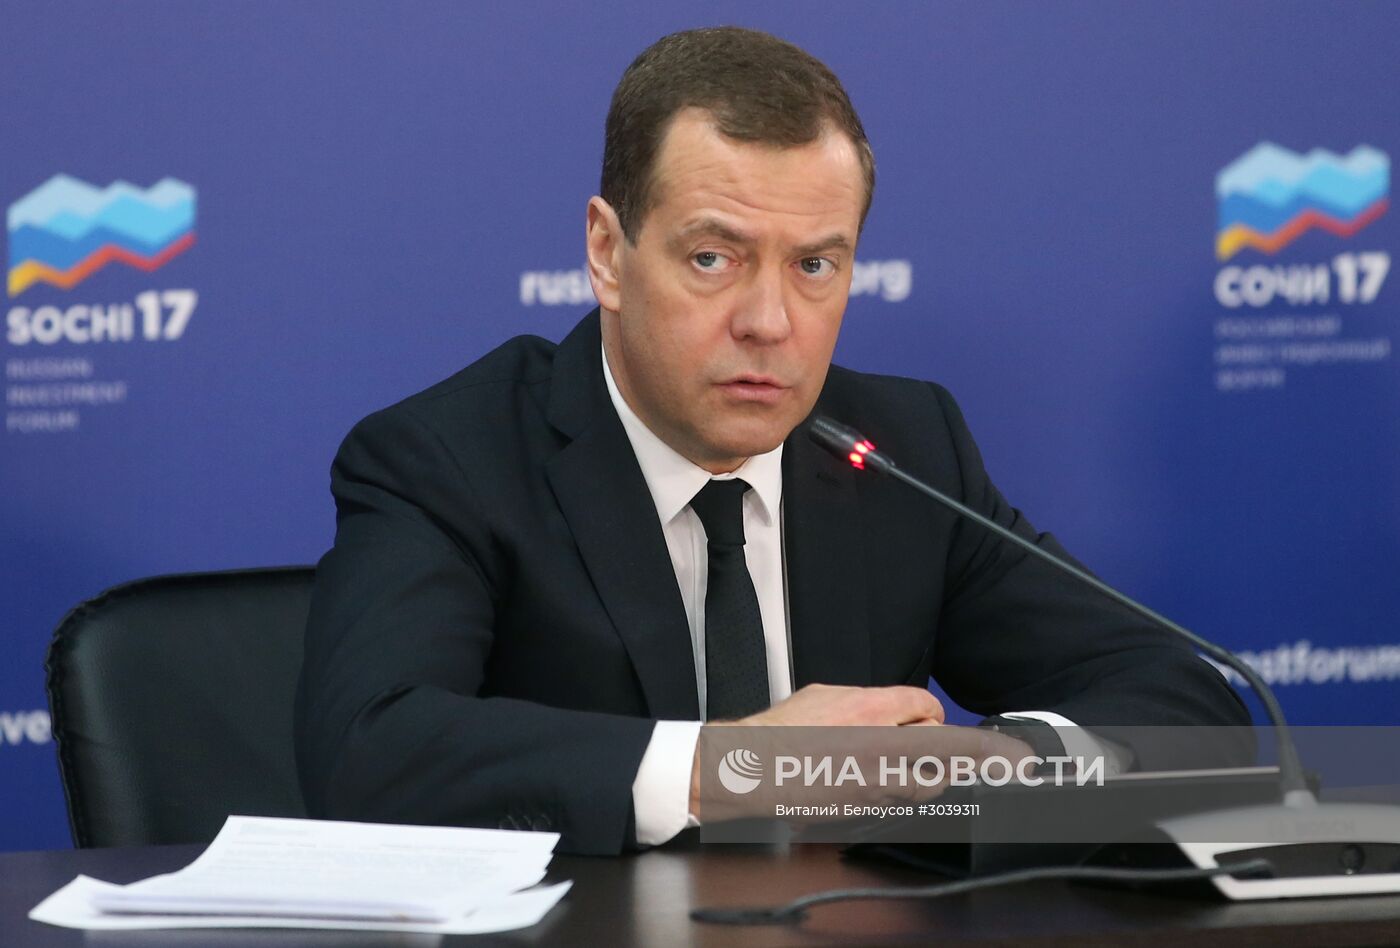 Премьер-министр РФ Дмитрий Медведев принял участие в работе Российского инвестиционного форума